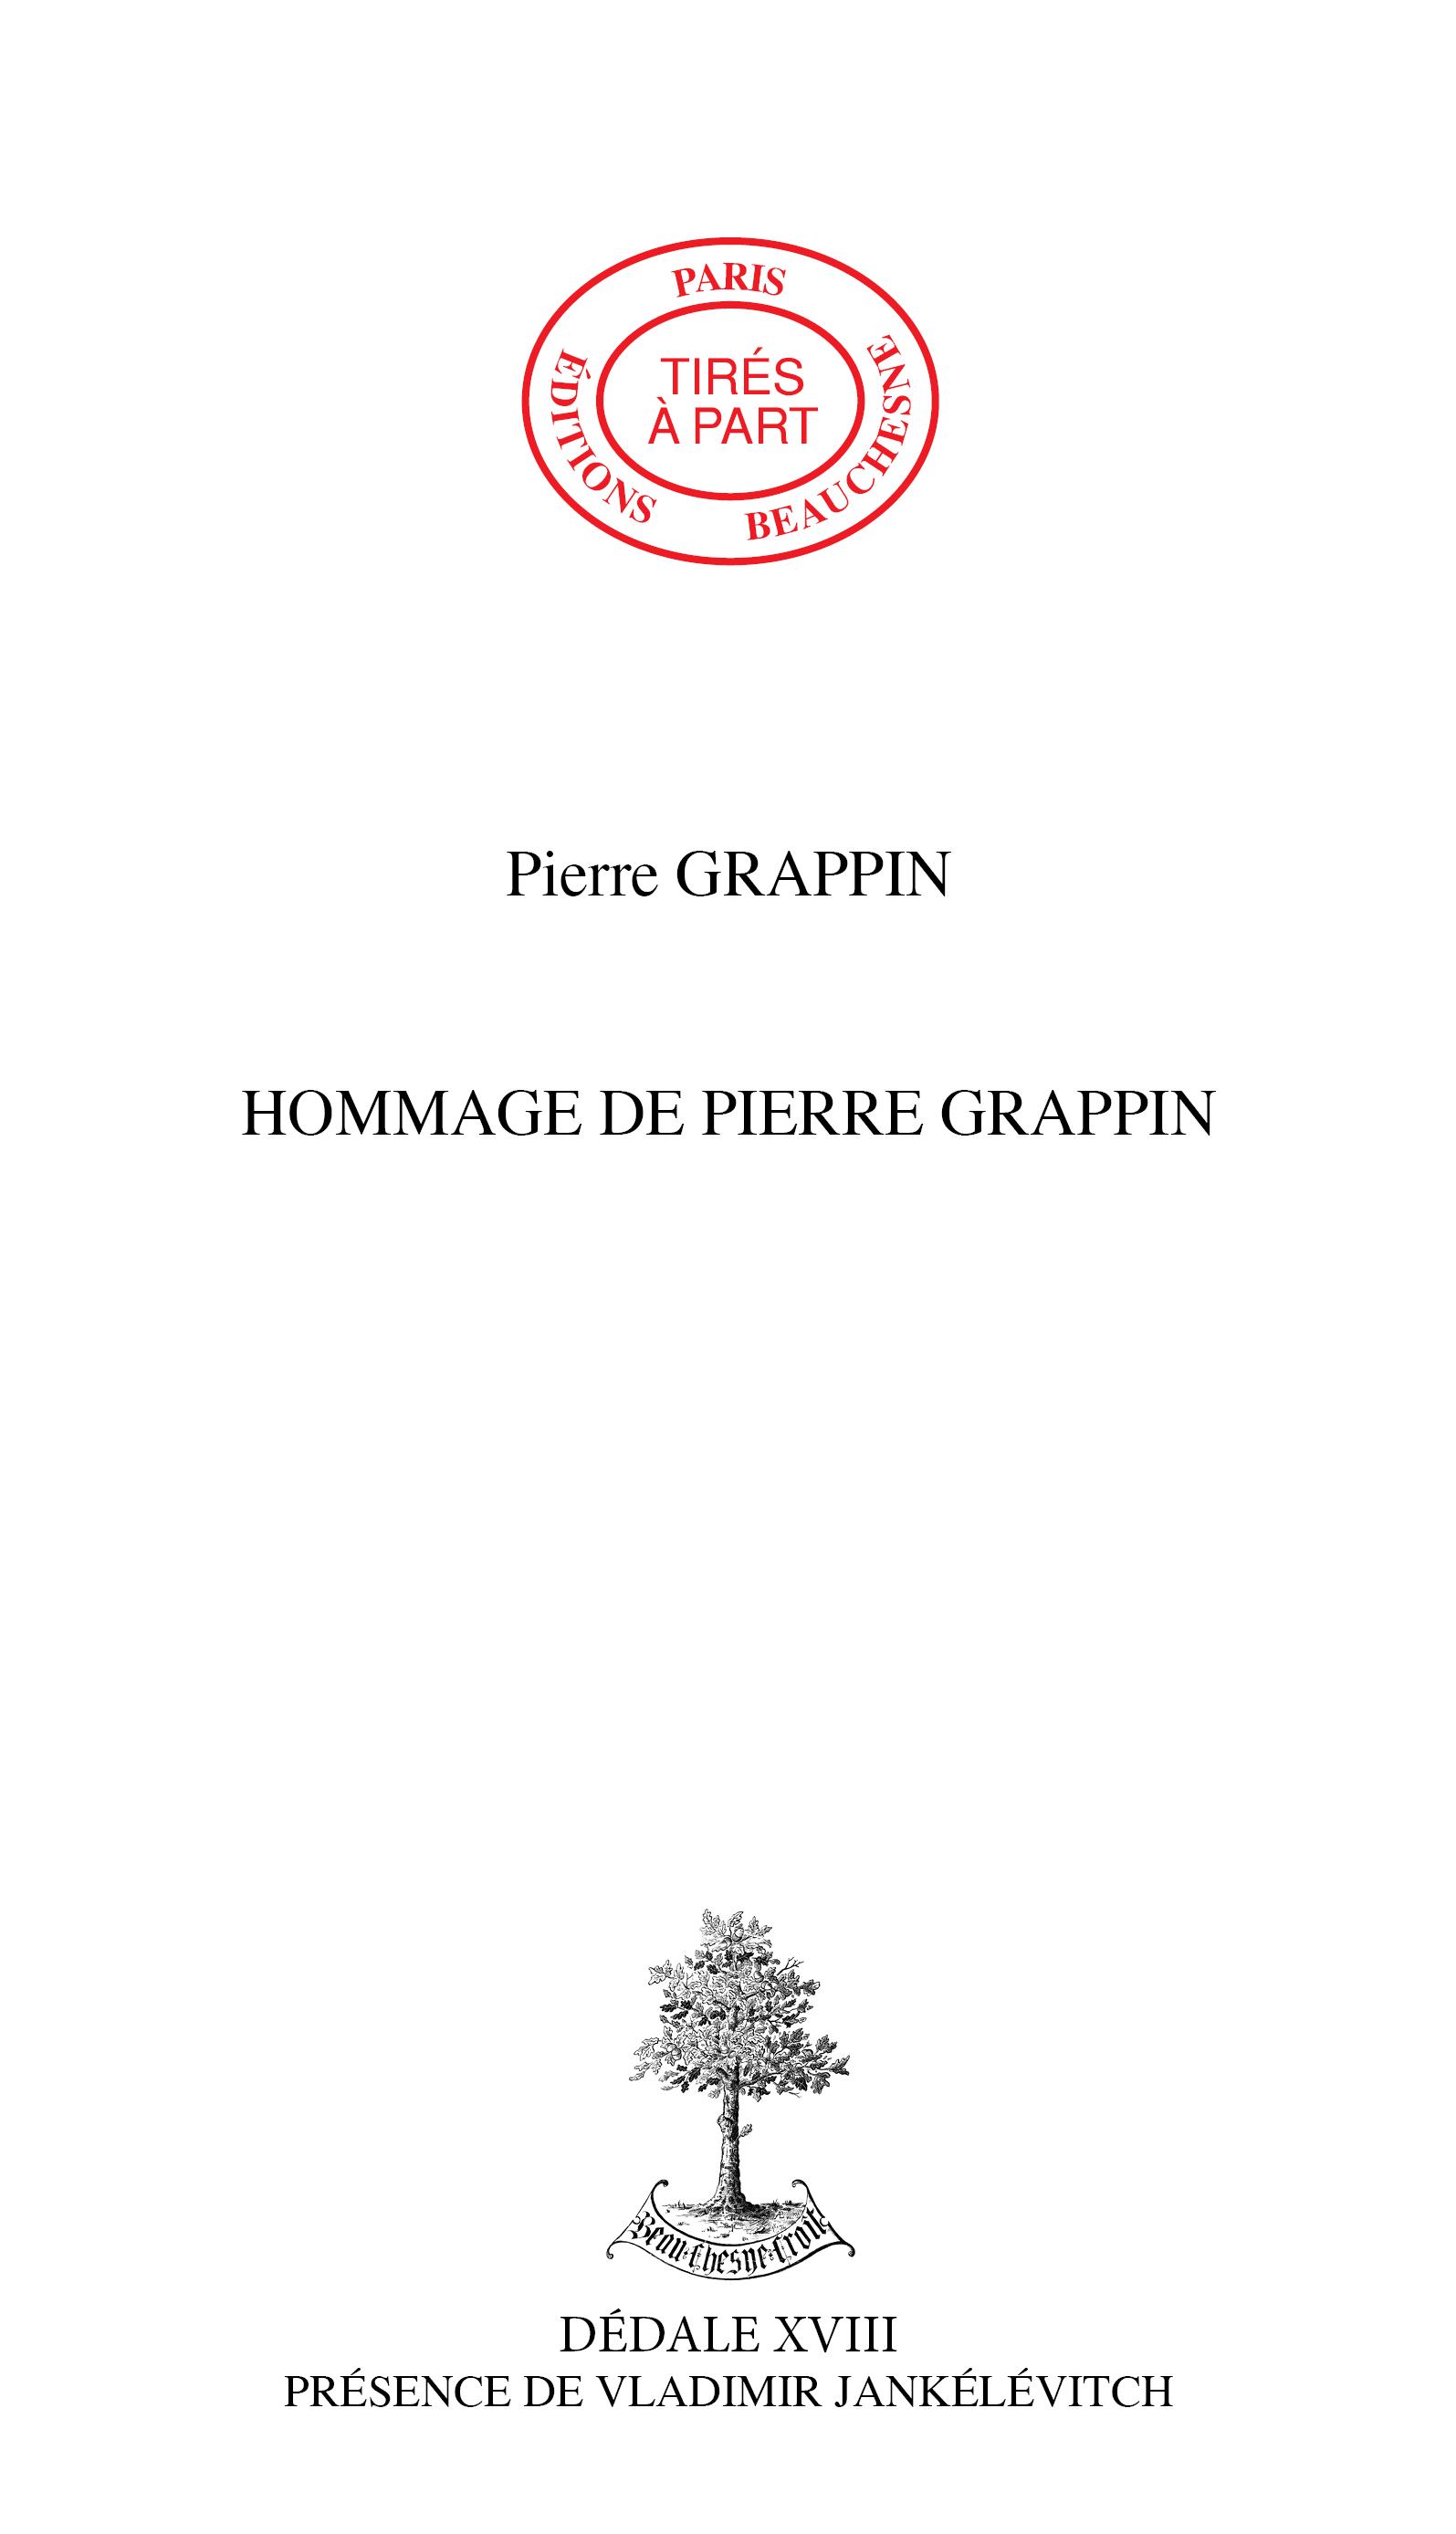 21. HOMMAGE DE PIERRE GRAPPIN